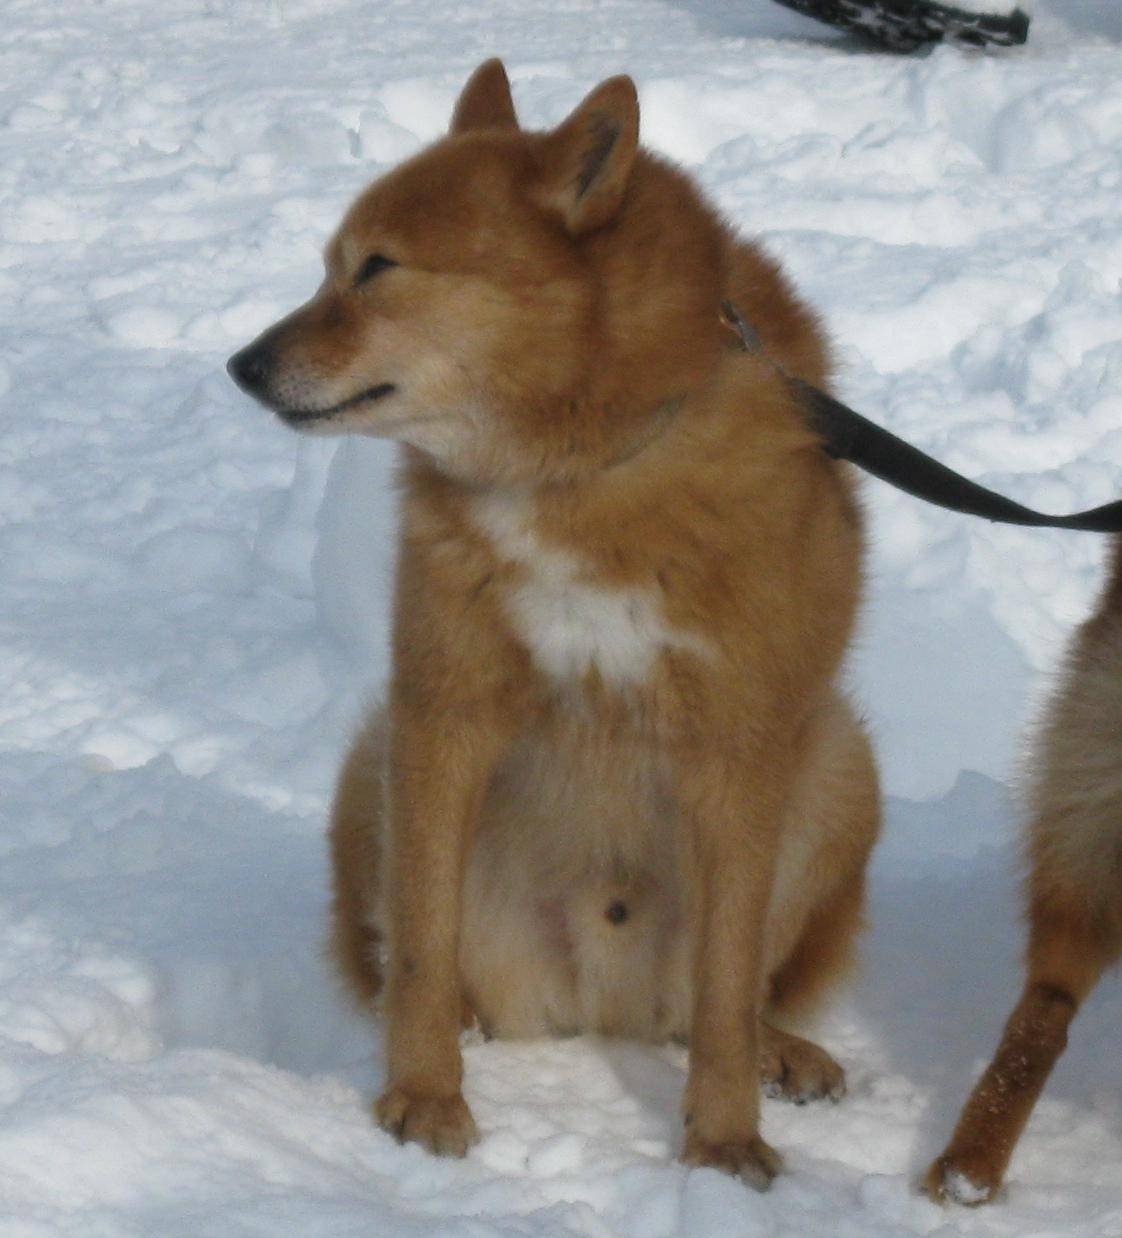 Карело-финская лайка: описание щенков и взрослых особей, характер собак